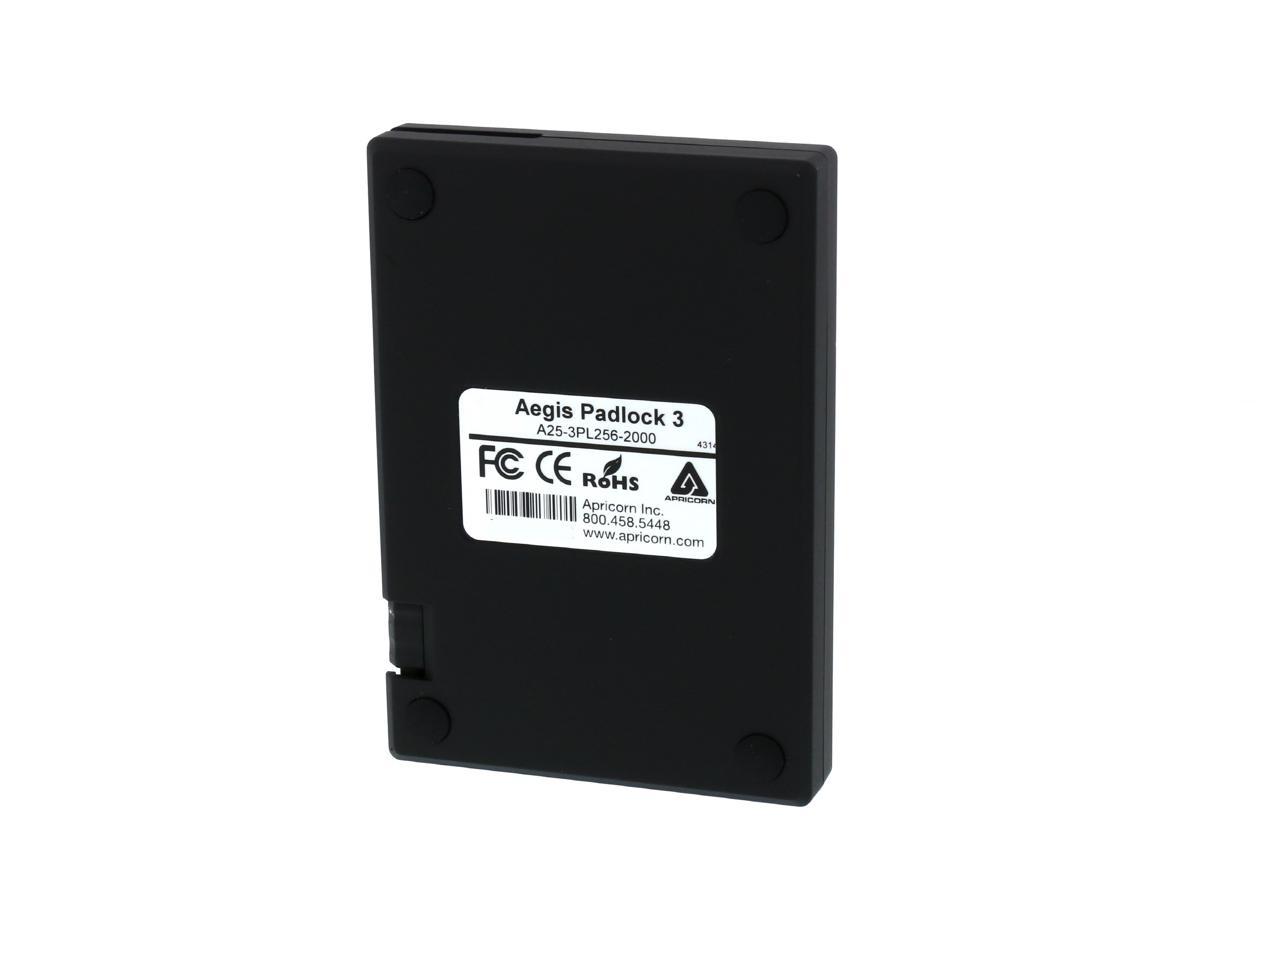 APRICORN 2TB Aegis Padlock Portable Hard Drive USB 3.0 Model A25-3PL256-2000  Black - Newegg.com